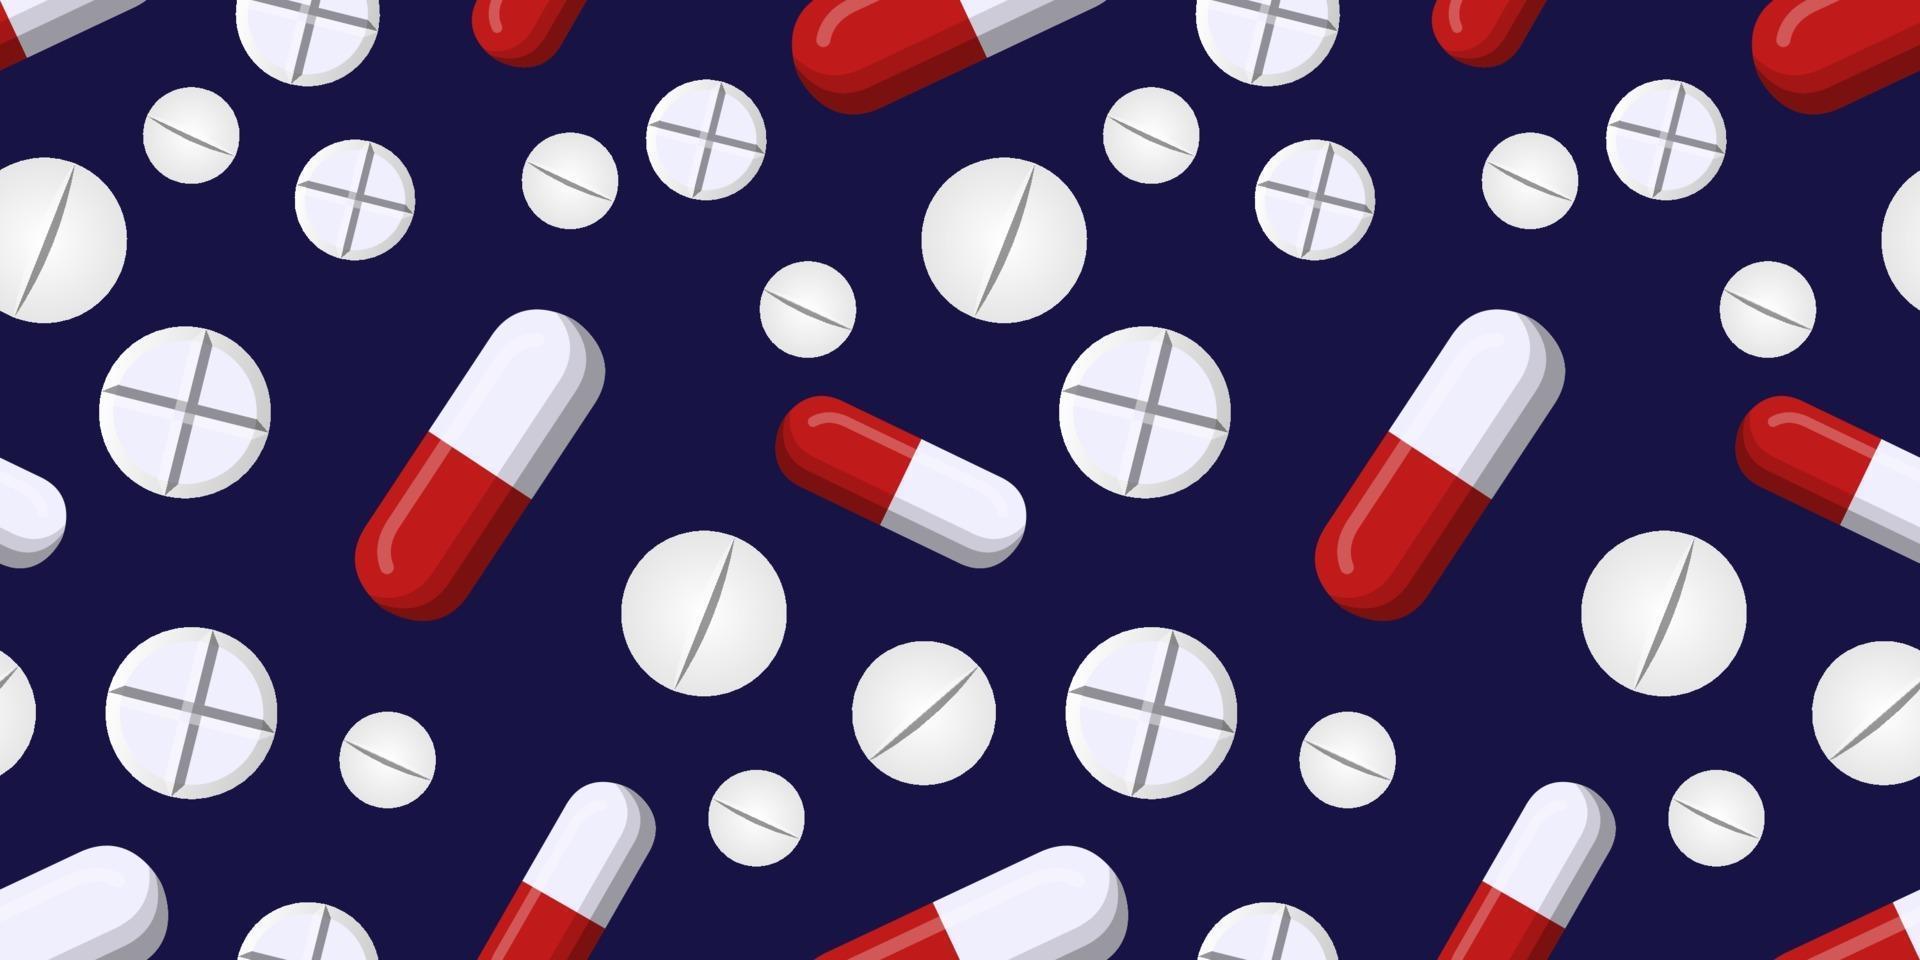 modello vettoriale senza soluzione di continuità di pillola capsula rossa e bianca e pillole bianche isolate su sfondo blu scuro. concetti creativi di medicina. illustrazione per l'industria farmaceutica.